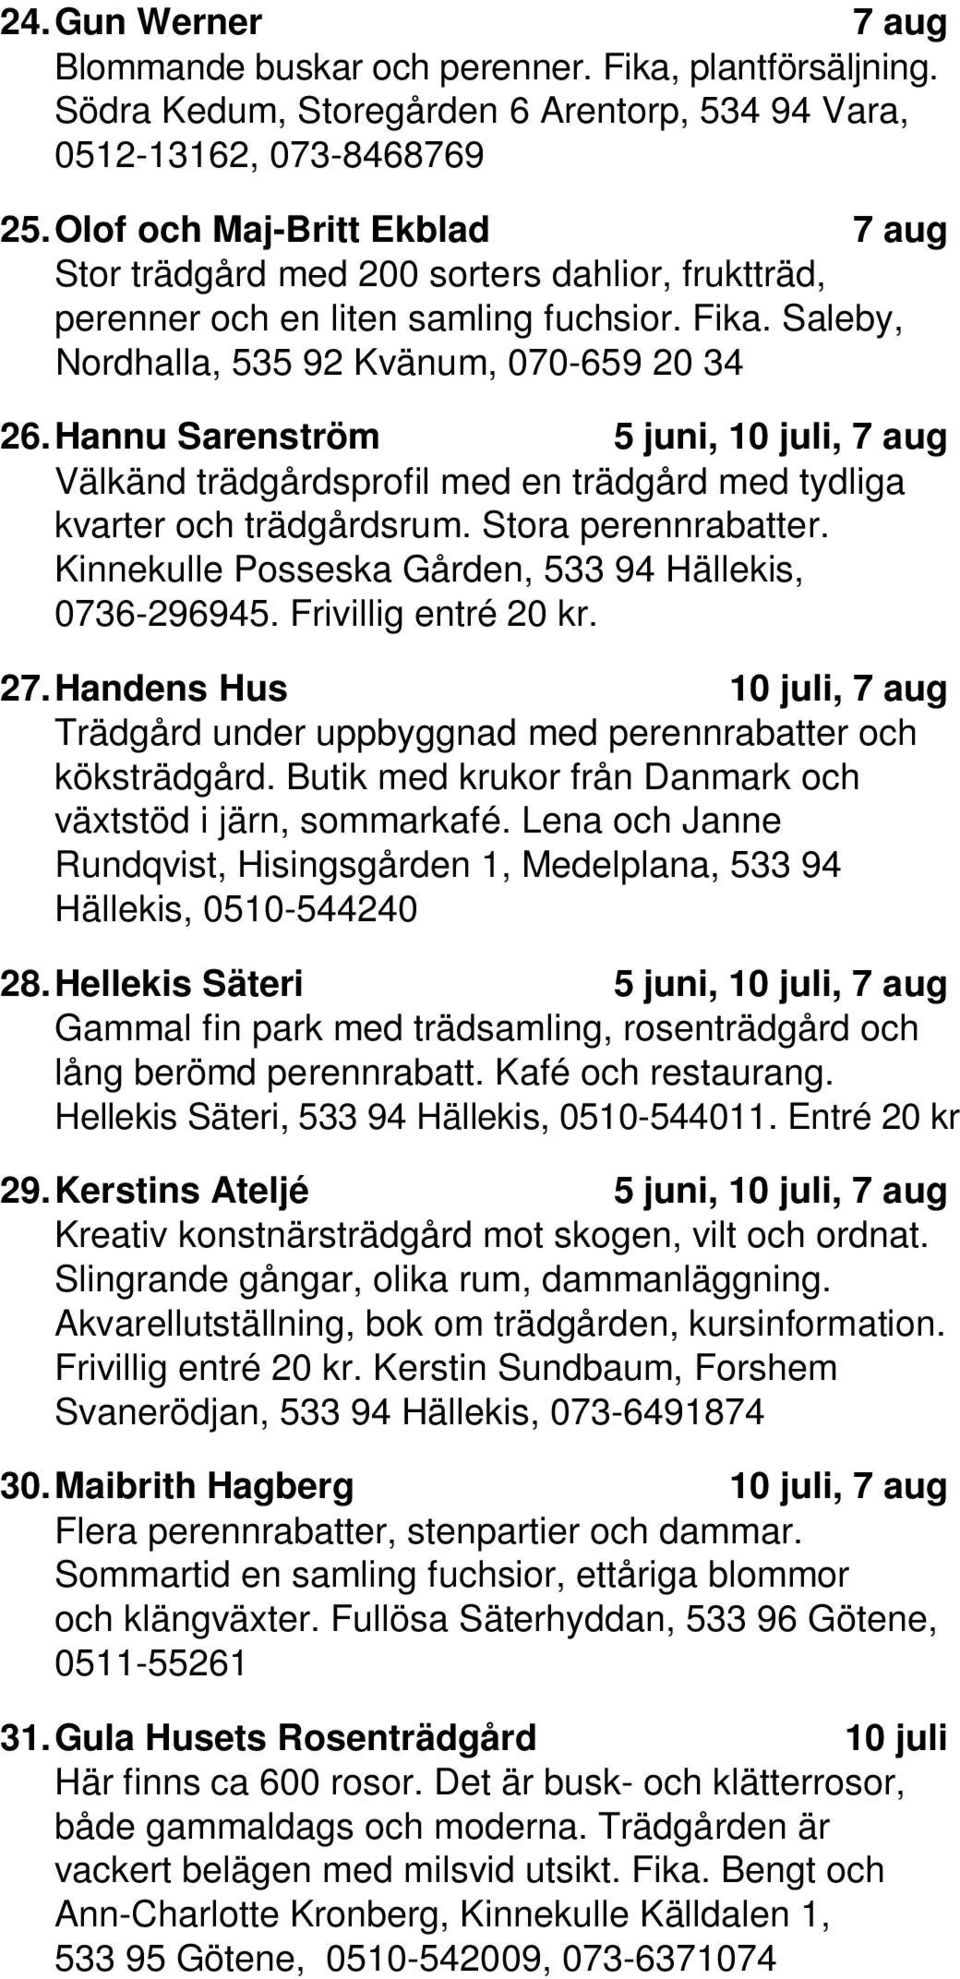 Hannu Sarenström 5, 10, 7 Välkänd trädgårdsprofil med en trädgård med tydliga kvarter och trädgårdsrum. Stora perennrabatter. Kinnekulle Posseska Gården, 533 94 Hällekis, 0736-296945.